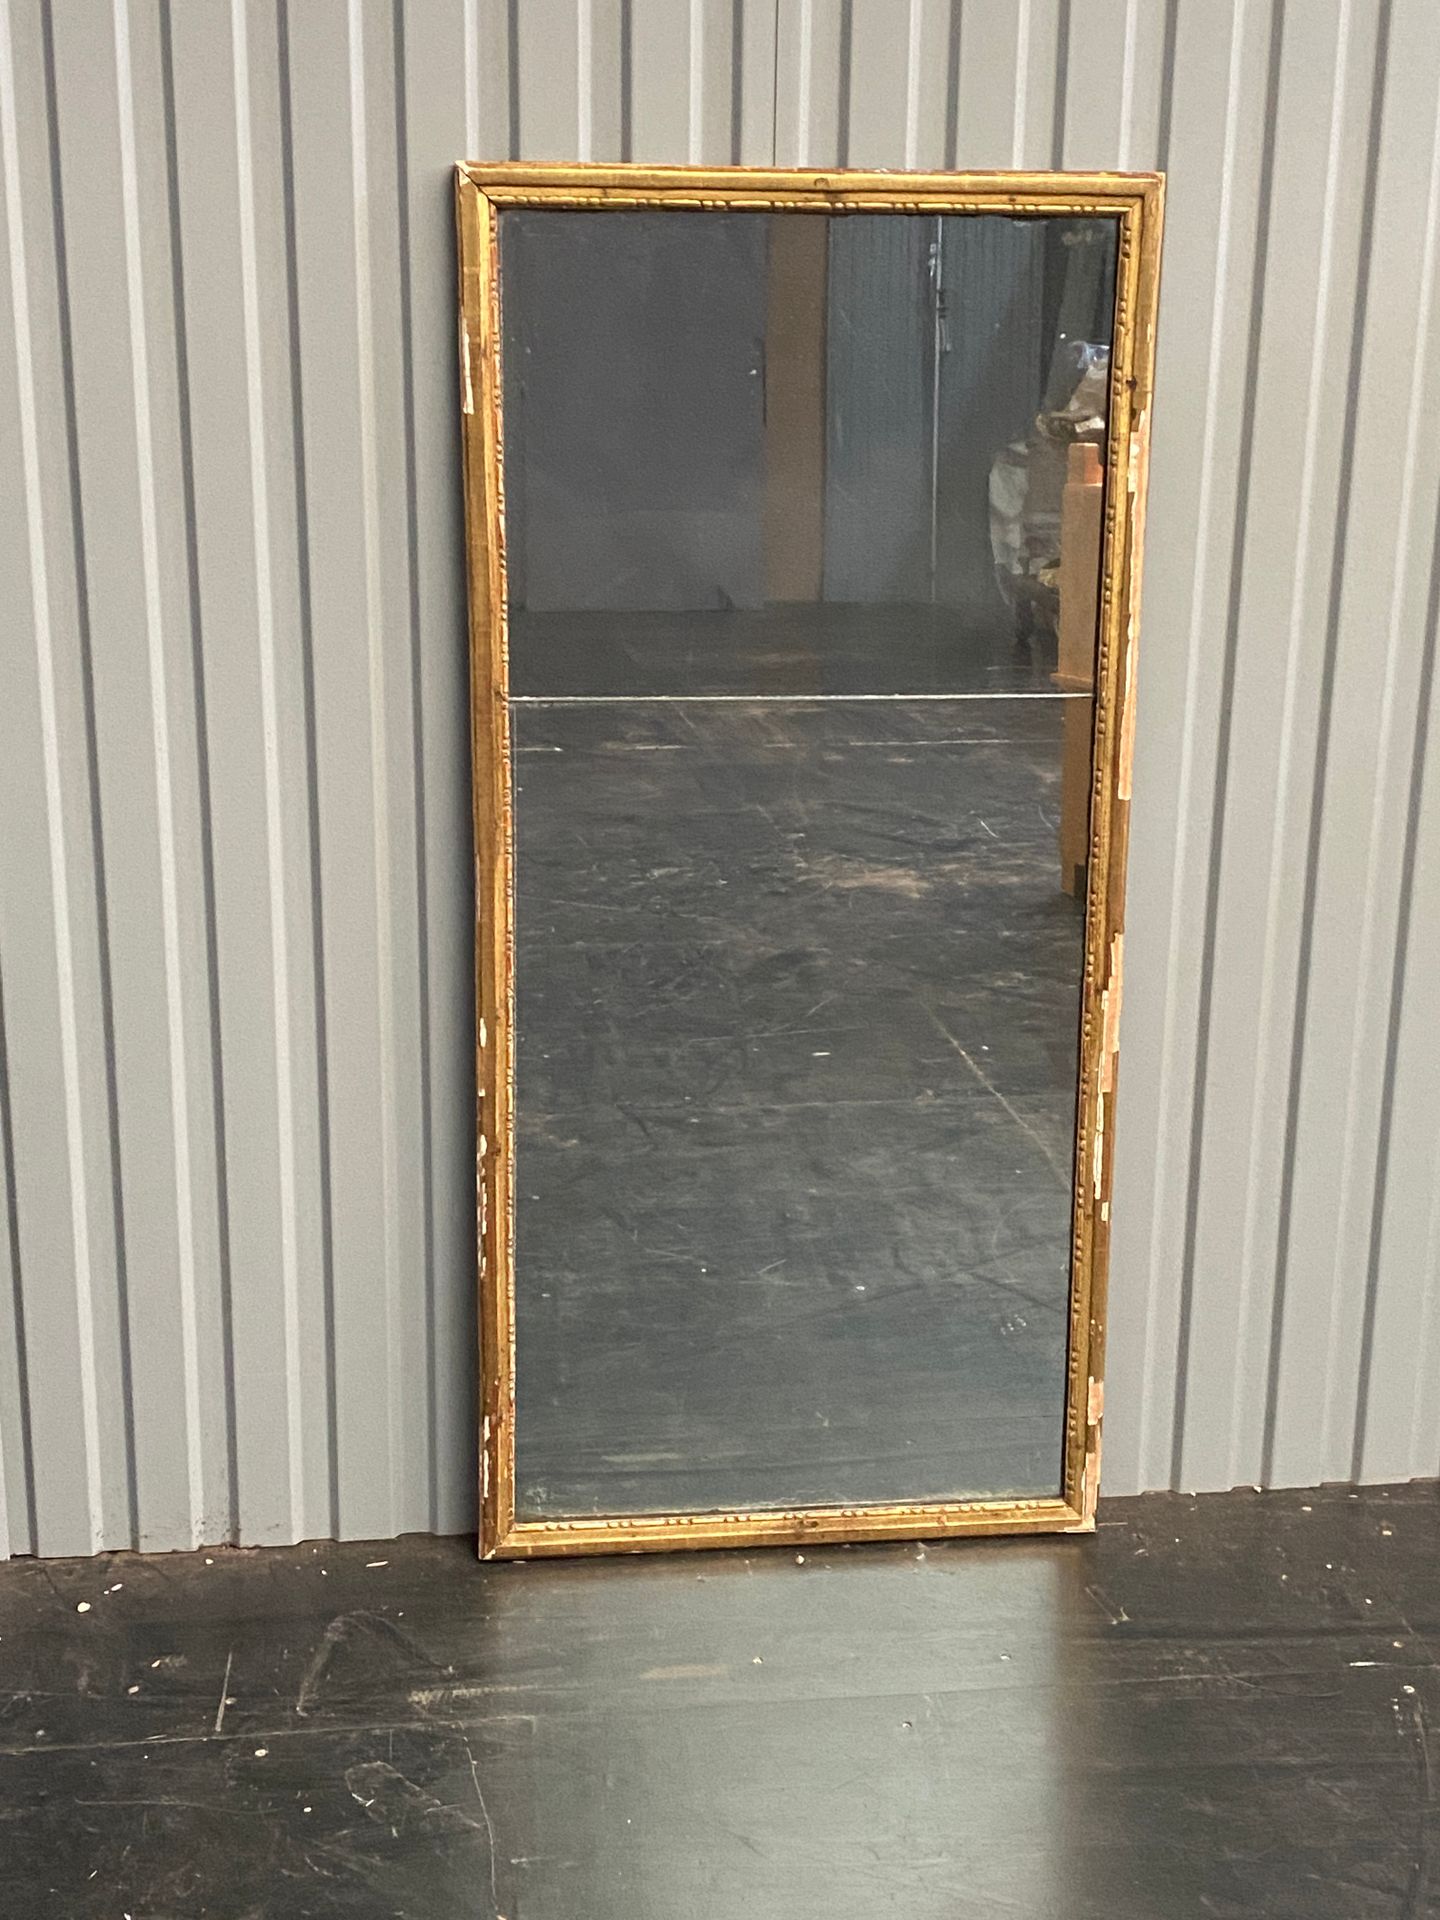 Null Miroir rectangulaire à encadrement doré

Accidents

H : 136 - Larg : 64 cm